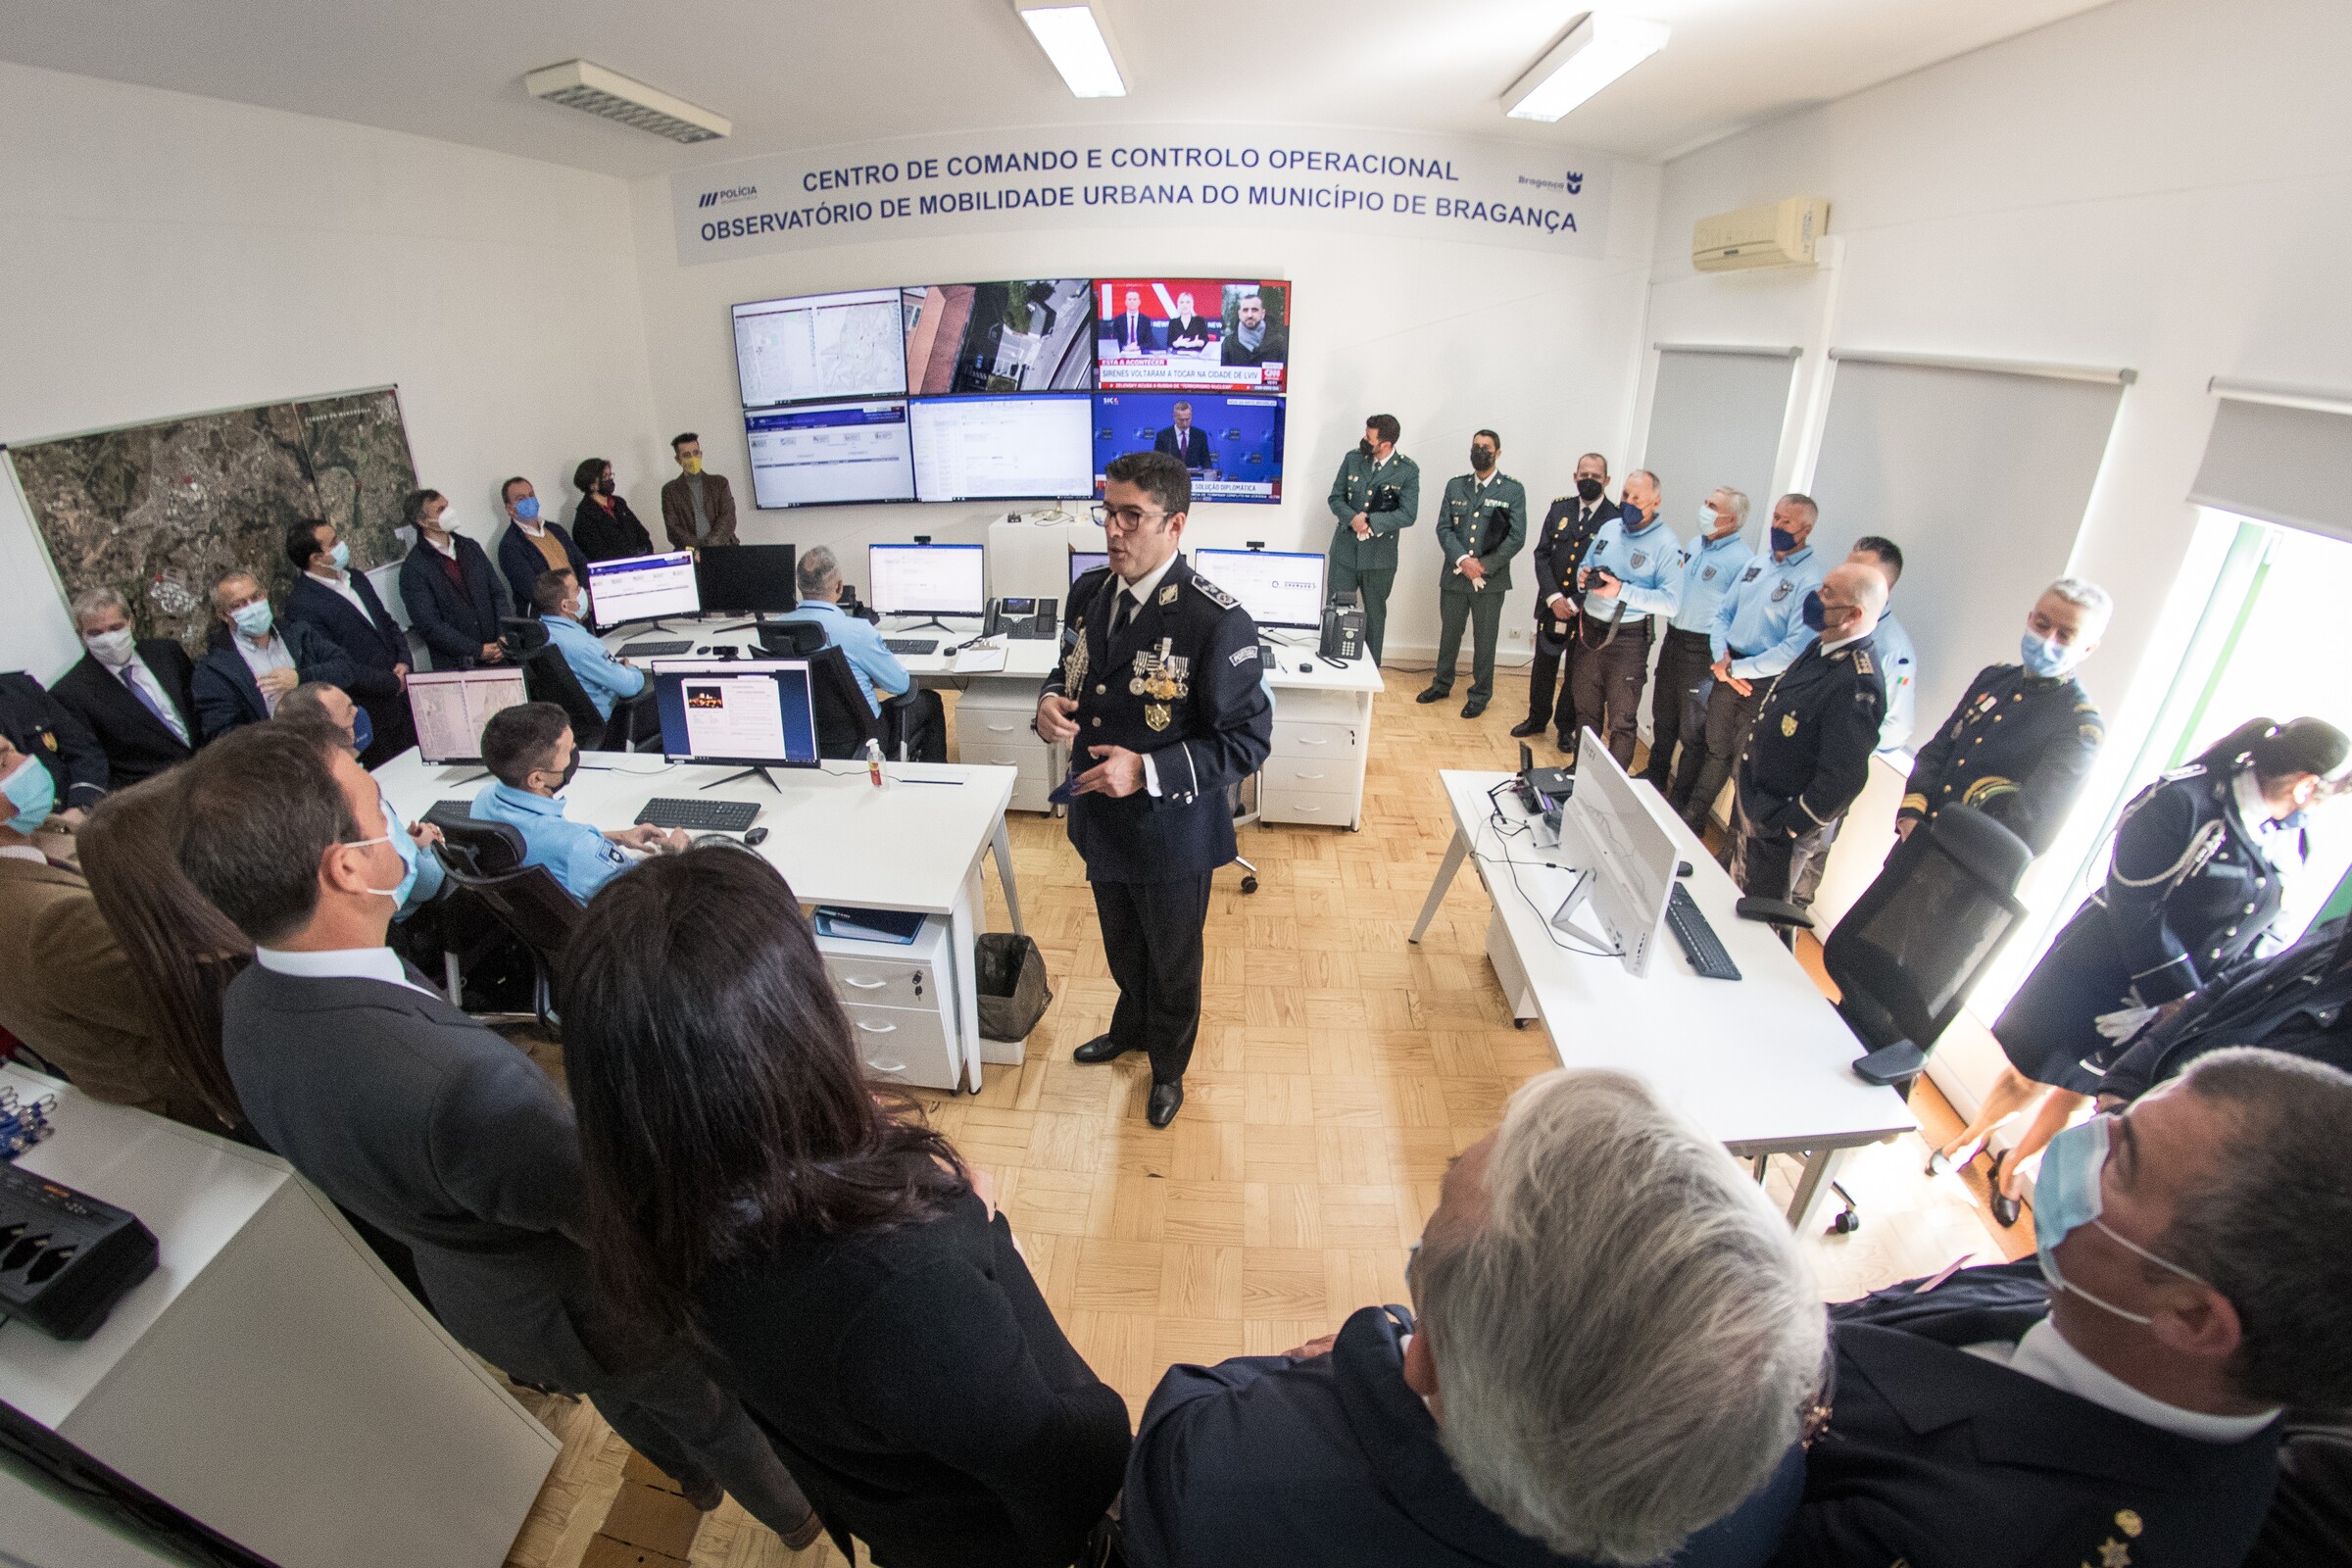 PSP comemora 146 anos com a inauguração do novo Centro de Comando e Controlo Operacional/Observat...